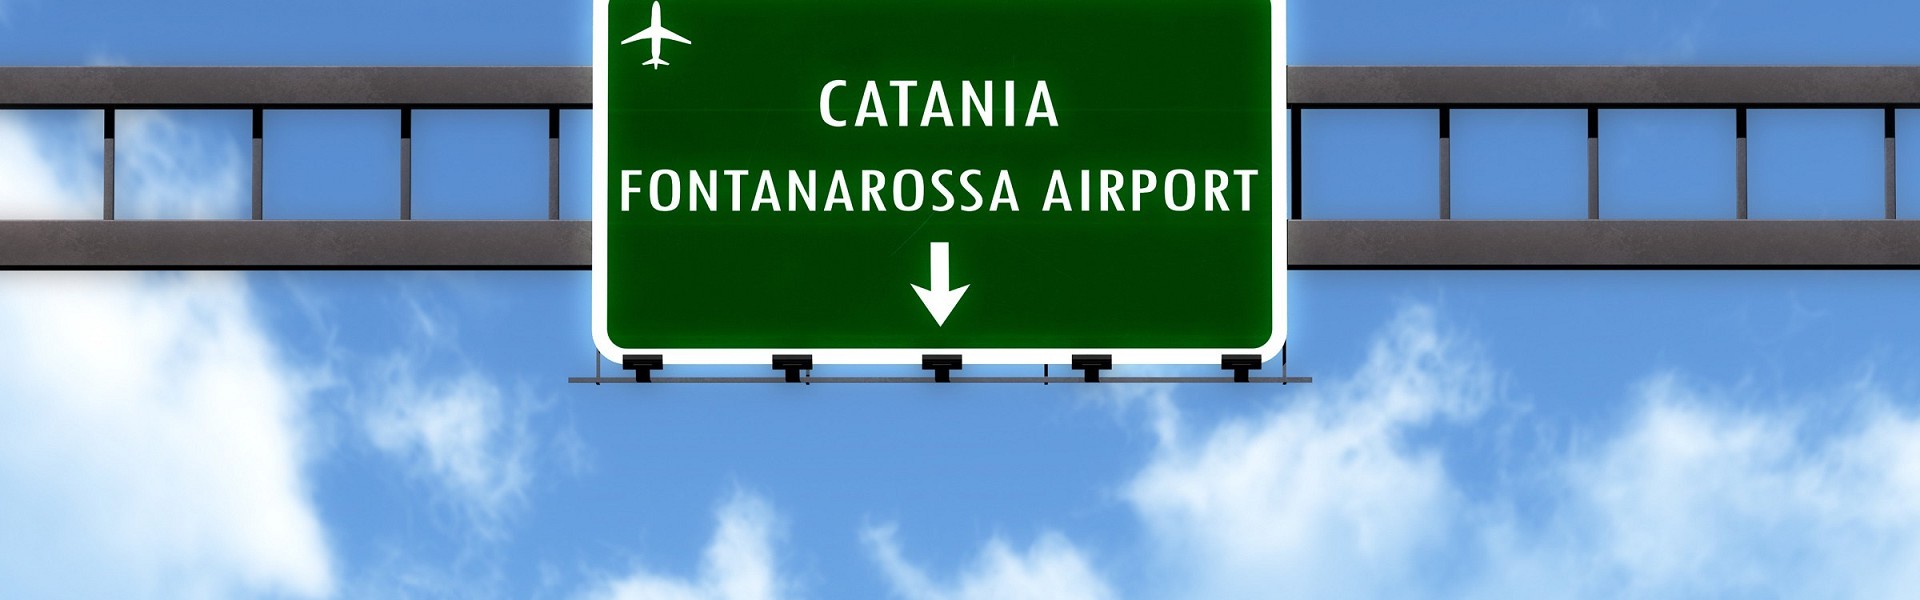 Parcheggio Coperto Aeroporto Internazionale di Catania | Parcheggio Aeroporto Catania con Navetta | Aeroporto Catania Dove Parcheggiare | Parcheggio Aeroporto Catania Economico